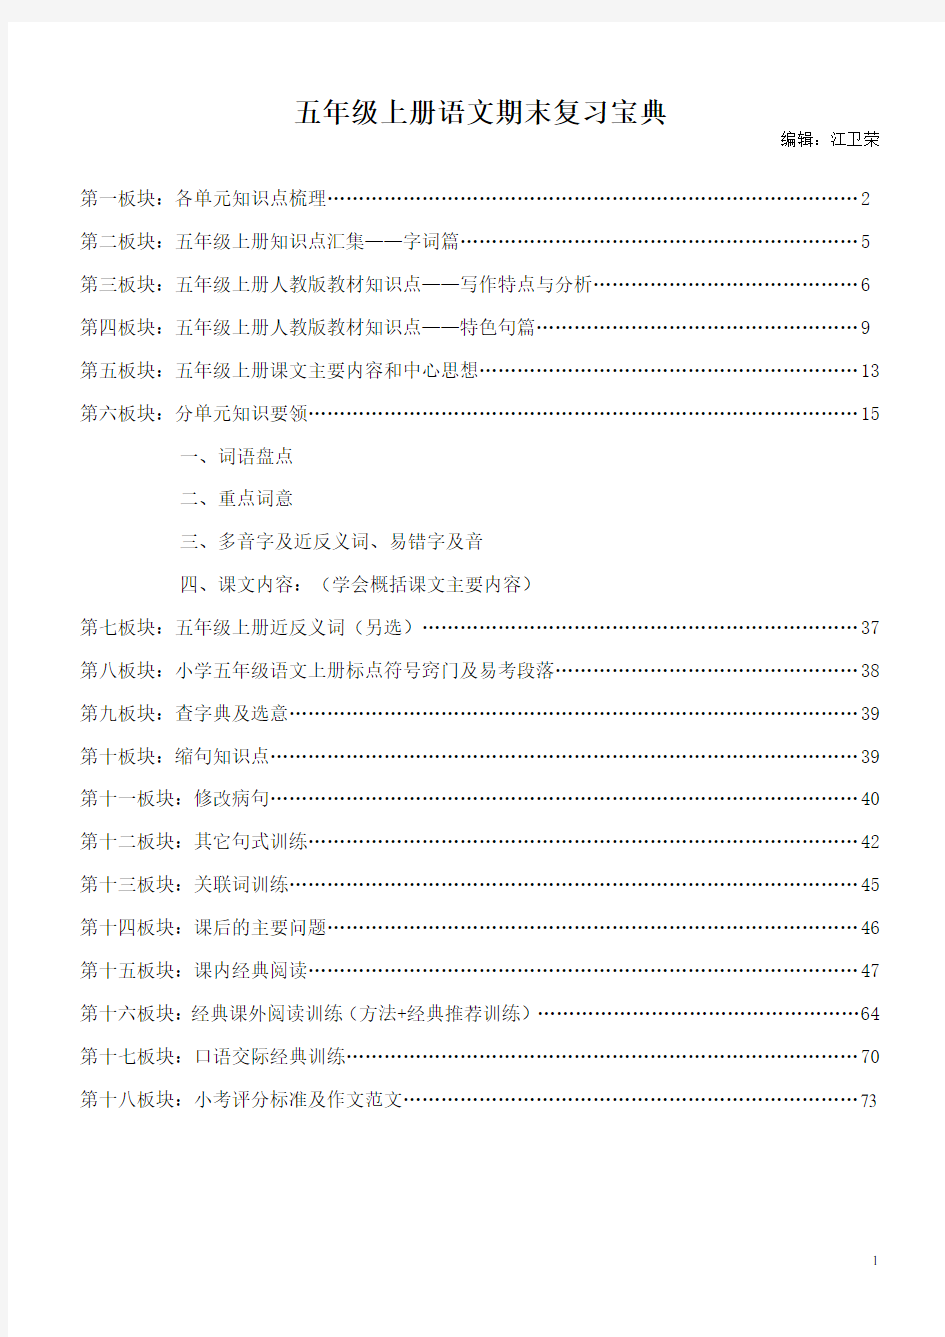 人教版小学语文五年级上册复习资料汇总(超全面,18个版块)